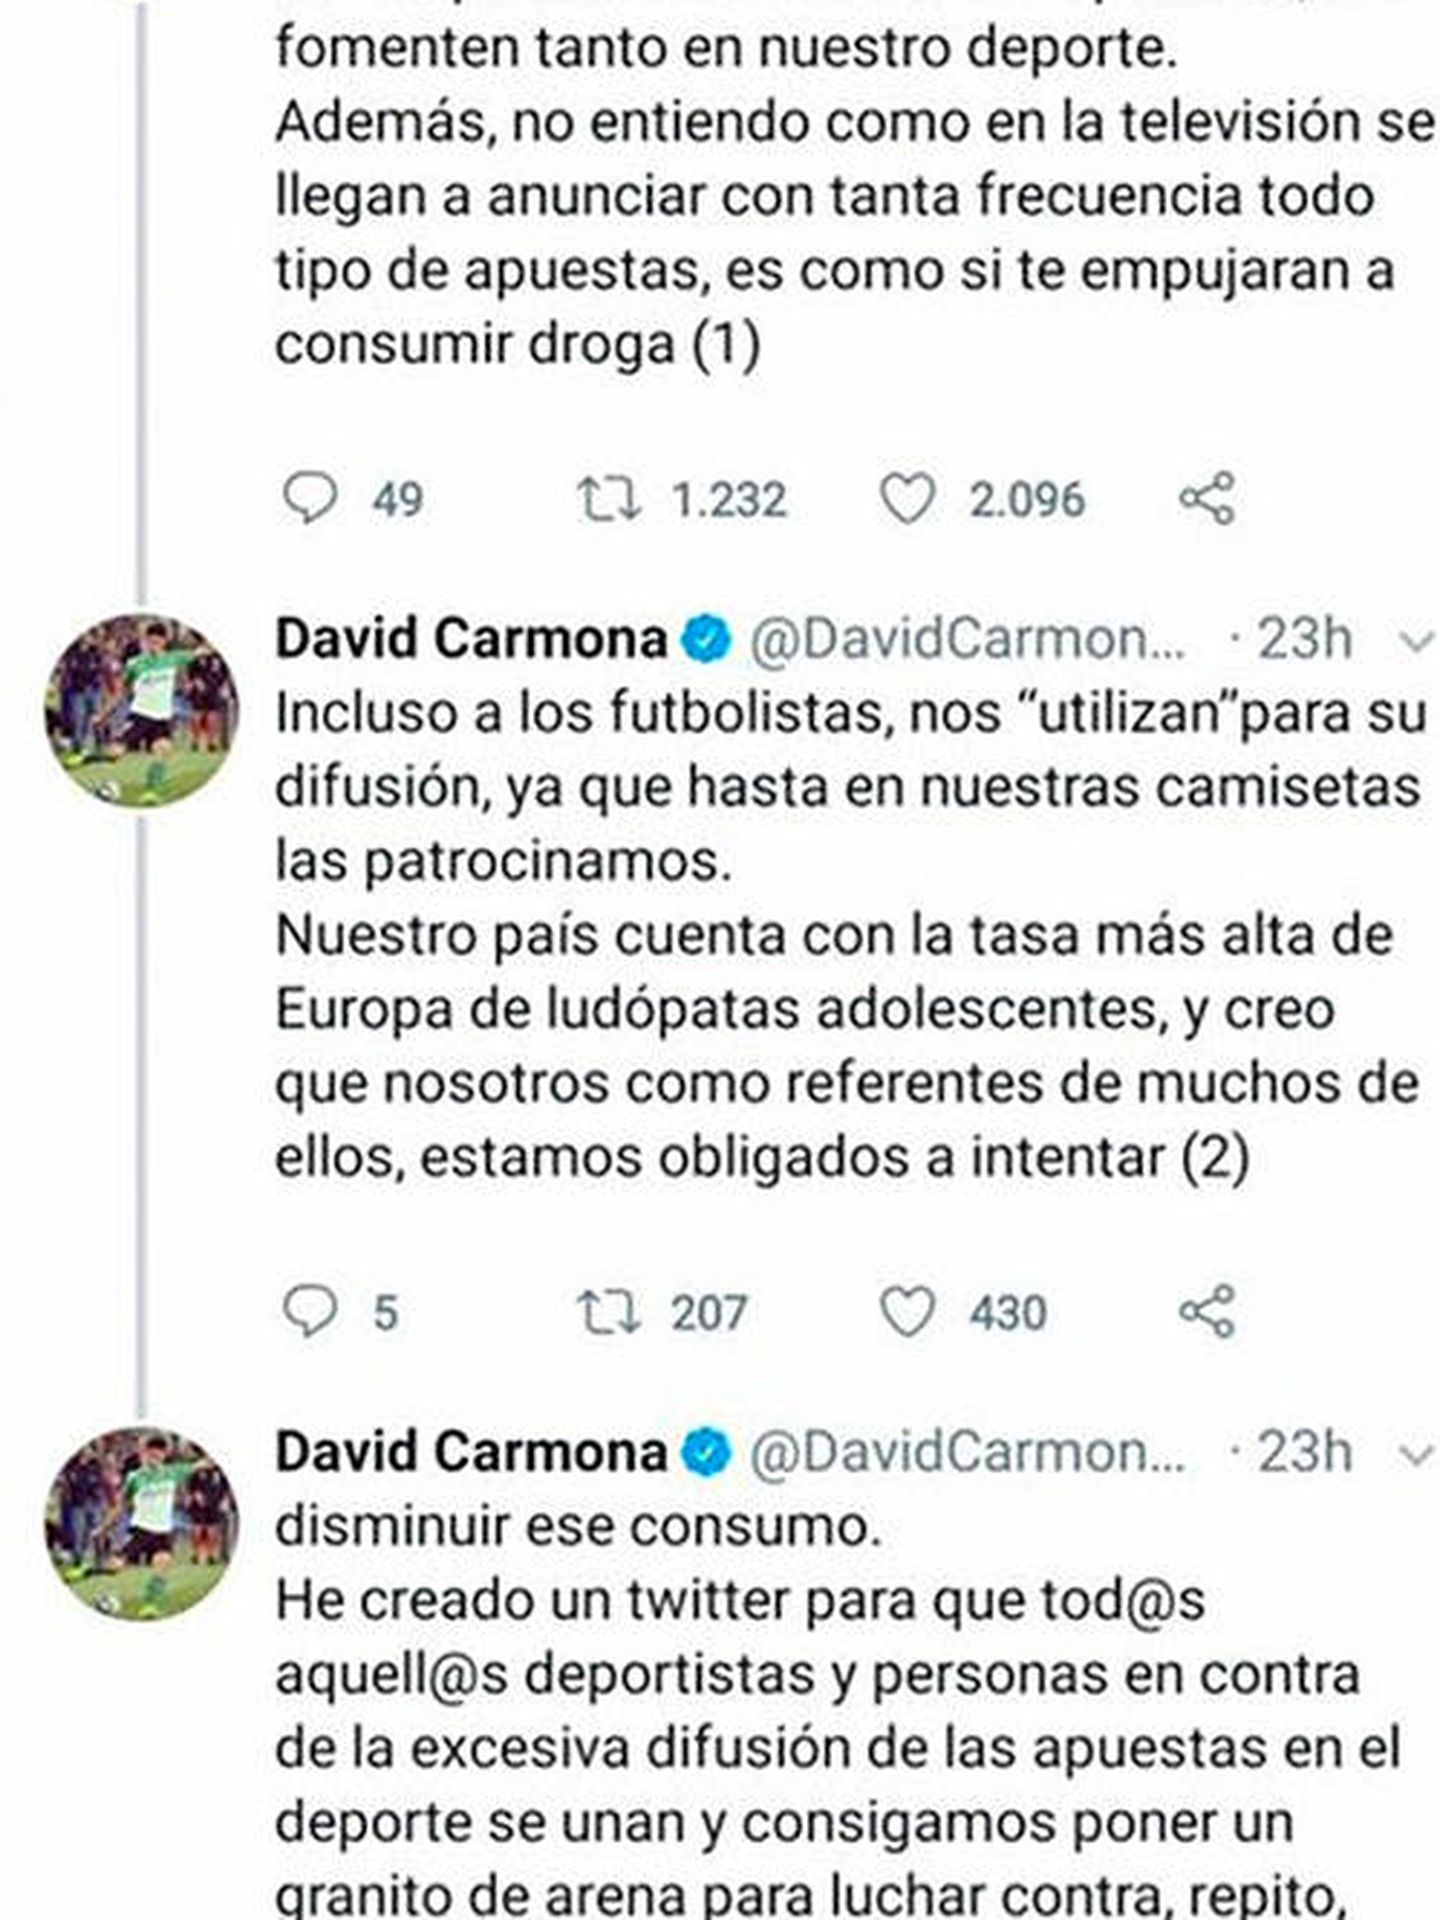 La cadena de tuits borrada por el futbolista del Racing de Santander. (Twitter)